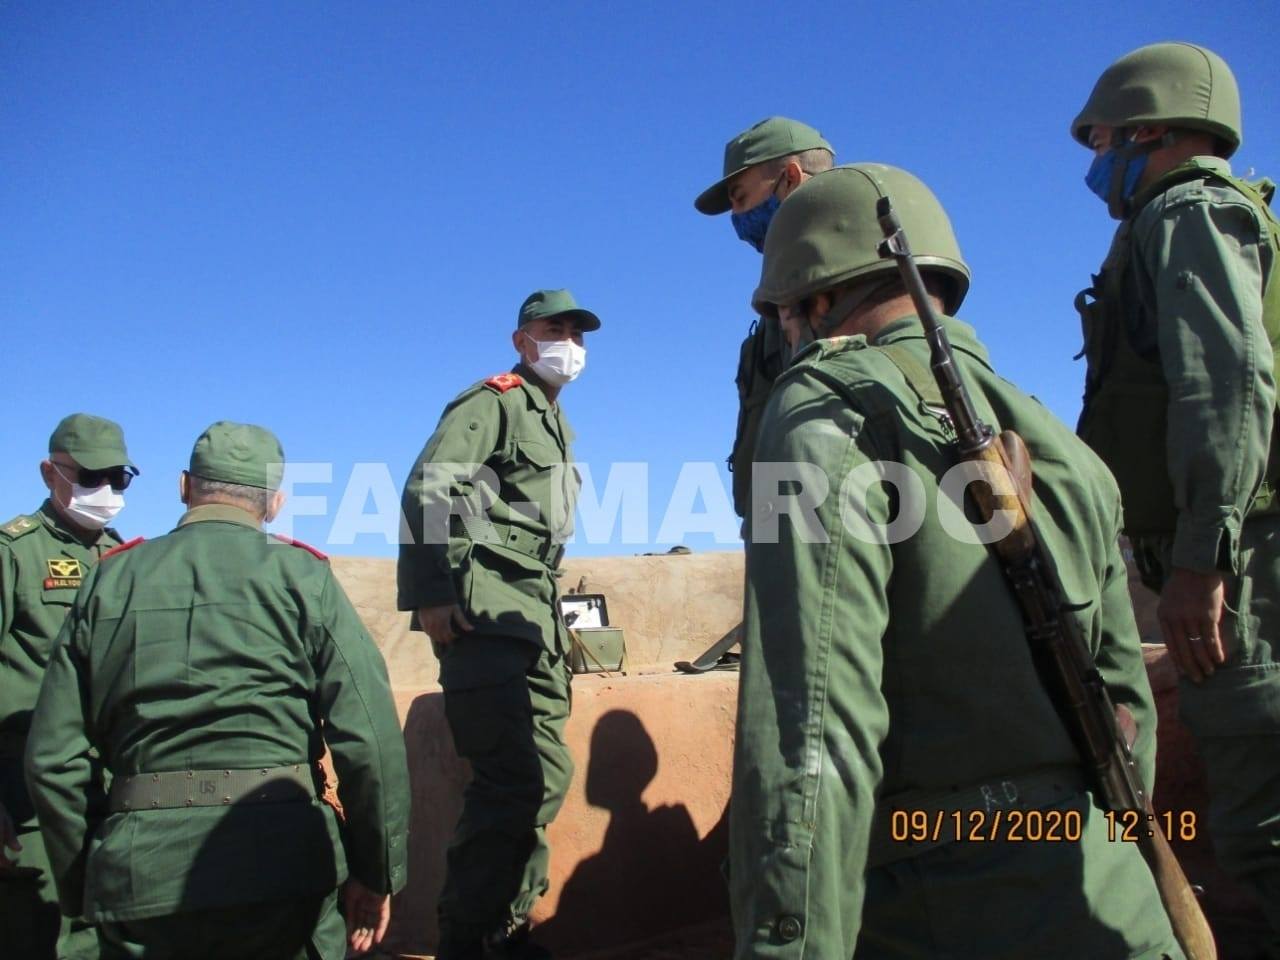  الجنرالان الوراق وبلخير وسط الجيش في الصحراء وموريتانيا تغلق حدودها في وجه مليشيات البوليساريو (صور حصرية)